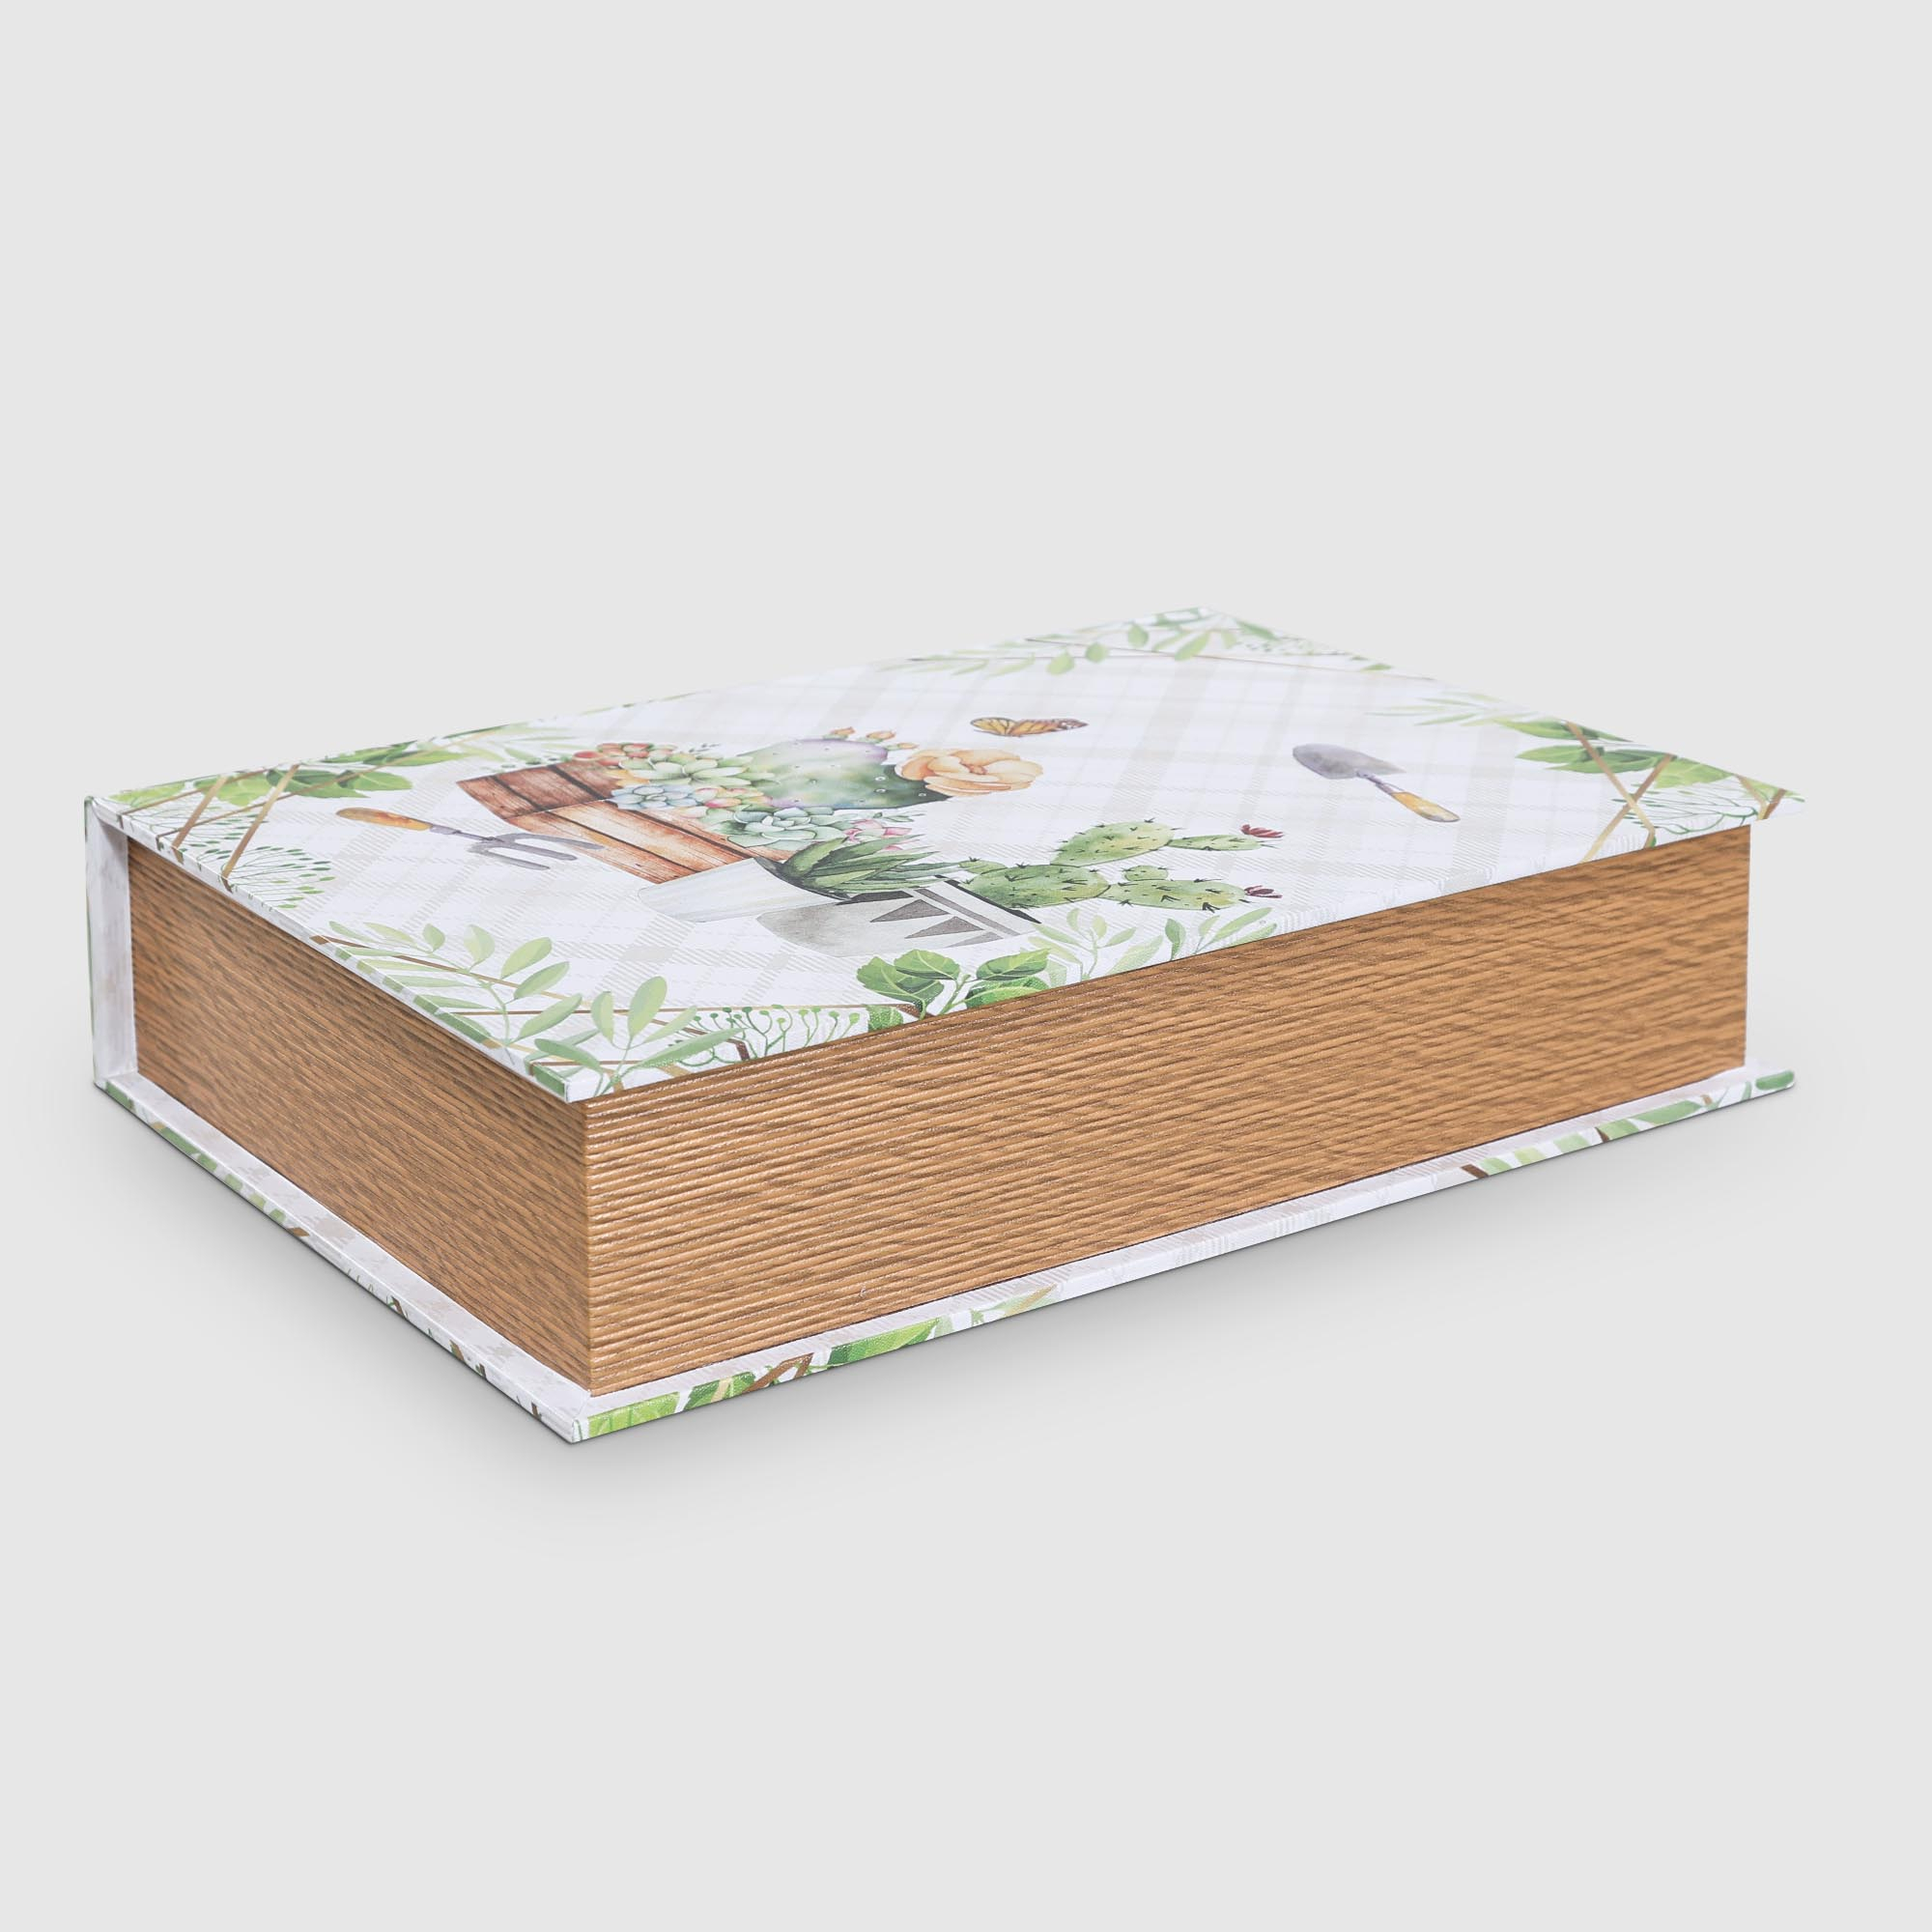 Шкатулка-книга Fuzhou star Сад 37,7x27,2x8,3 см разноцветная